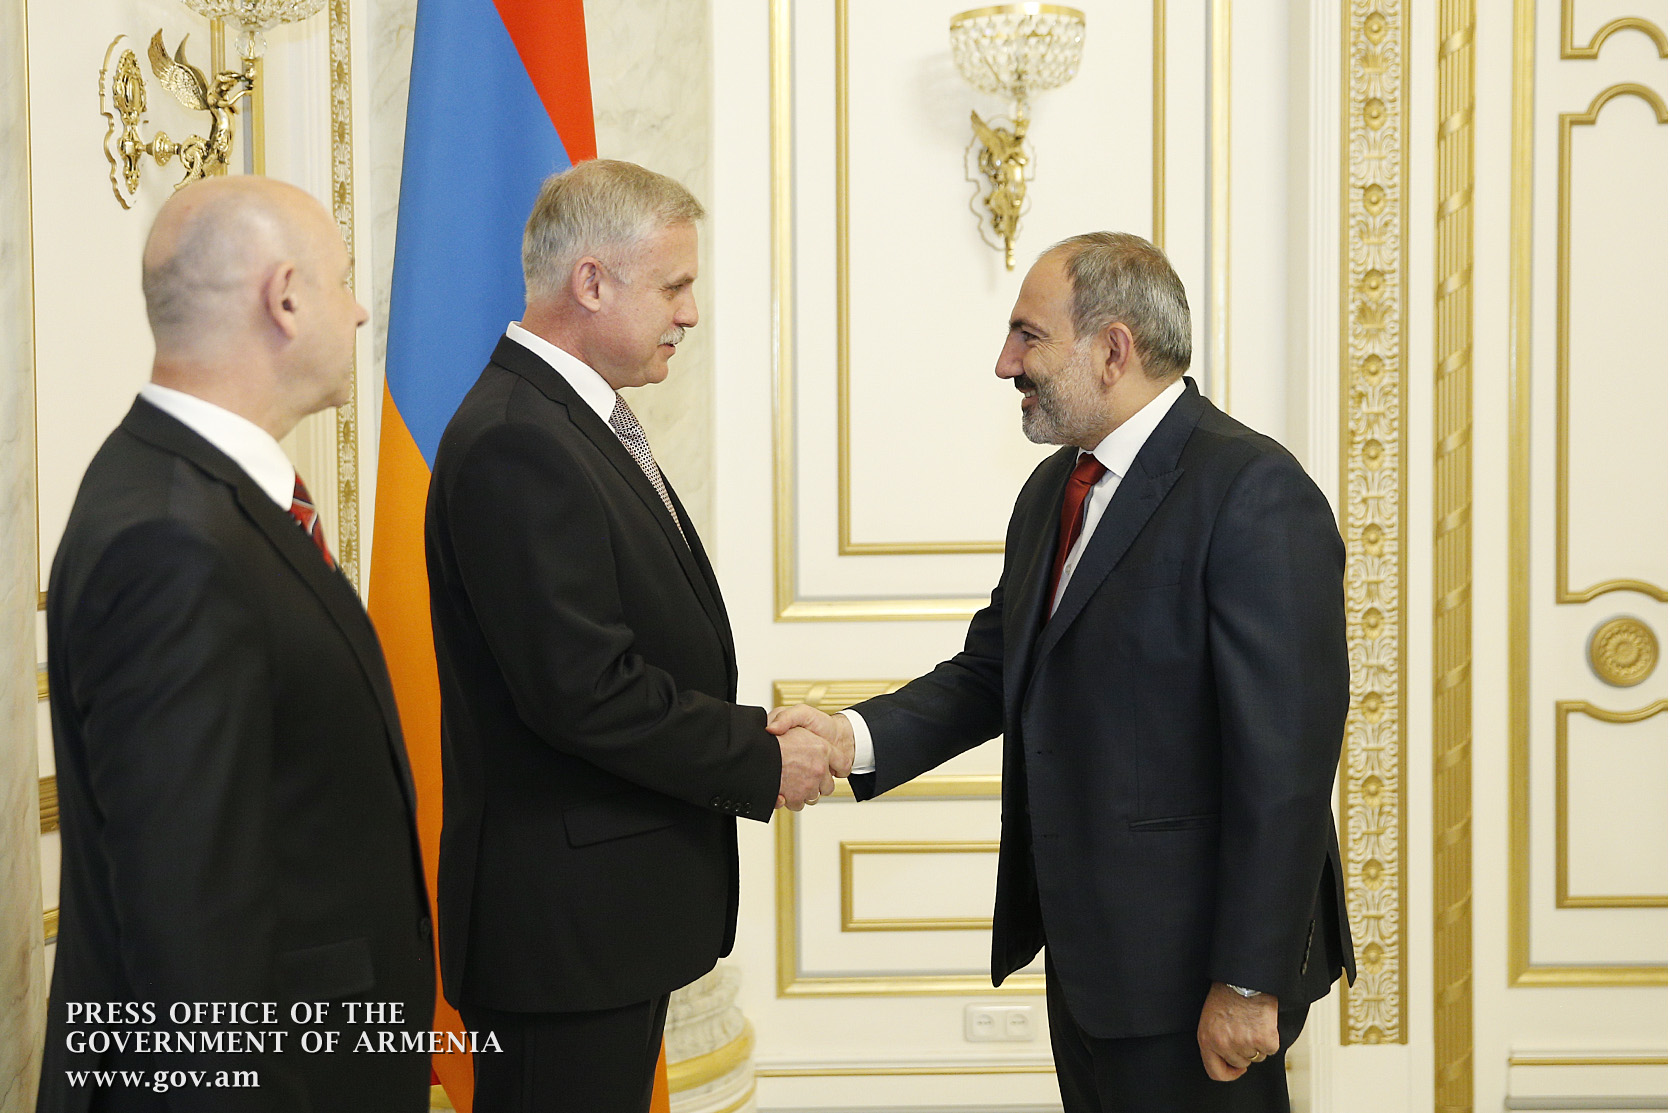 СМИ: Визит Зася в Армению показывает, что разногласия закончились 